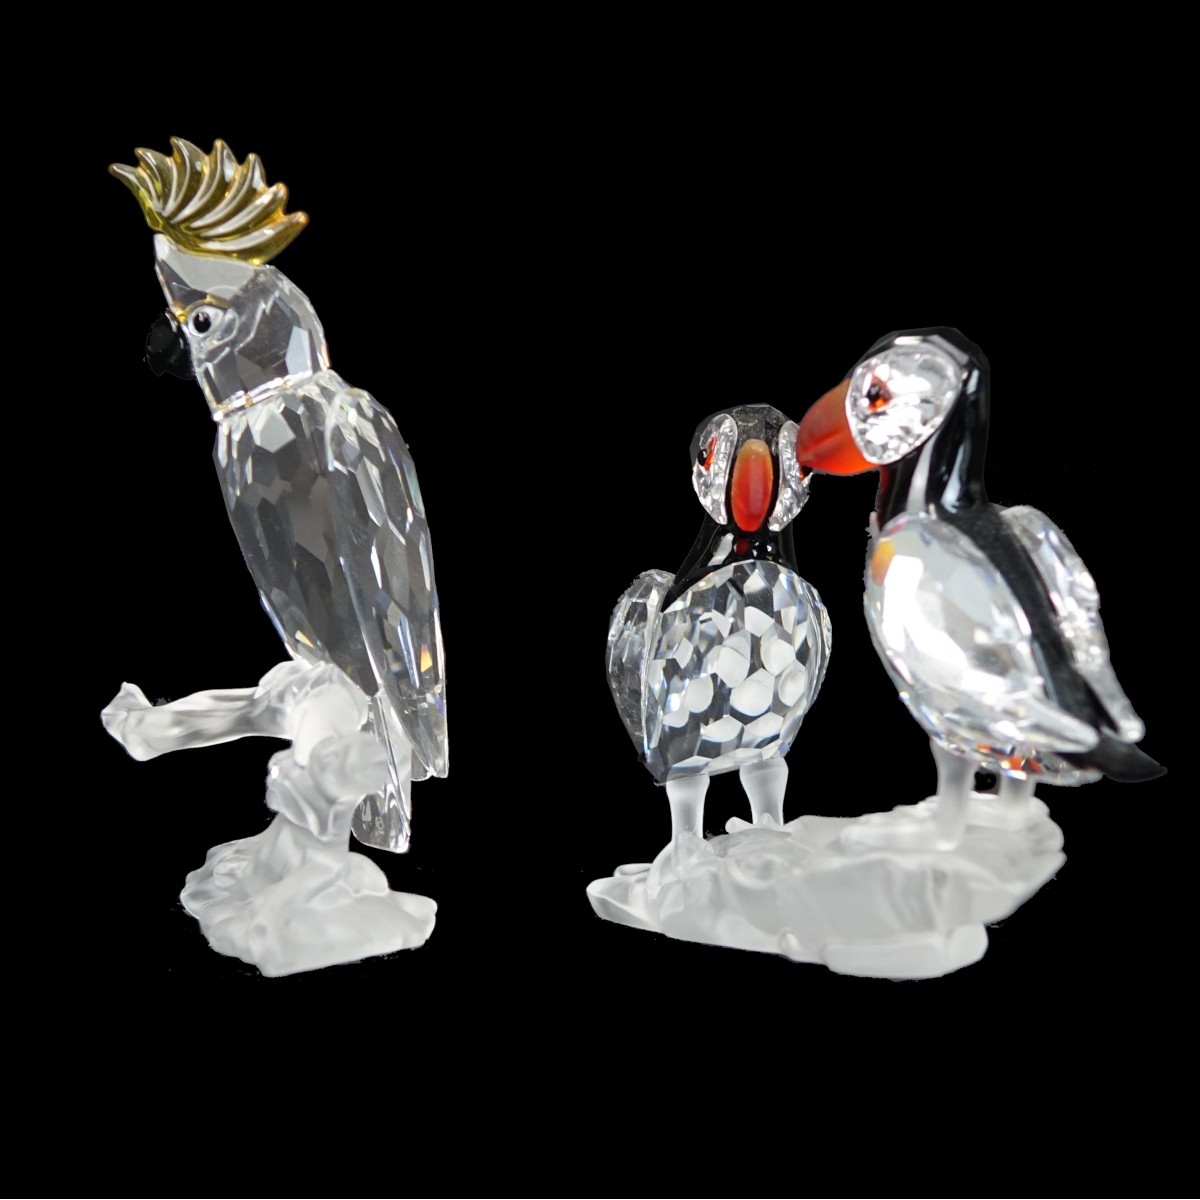 Two (2) Swarovski Bird Figurines